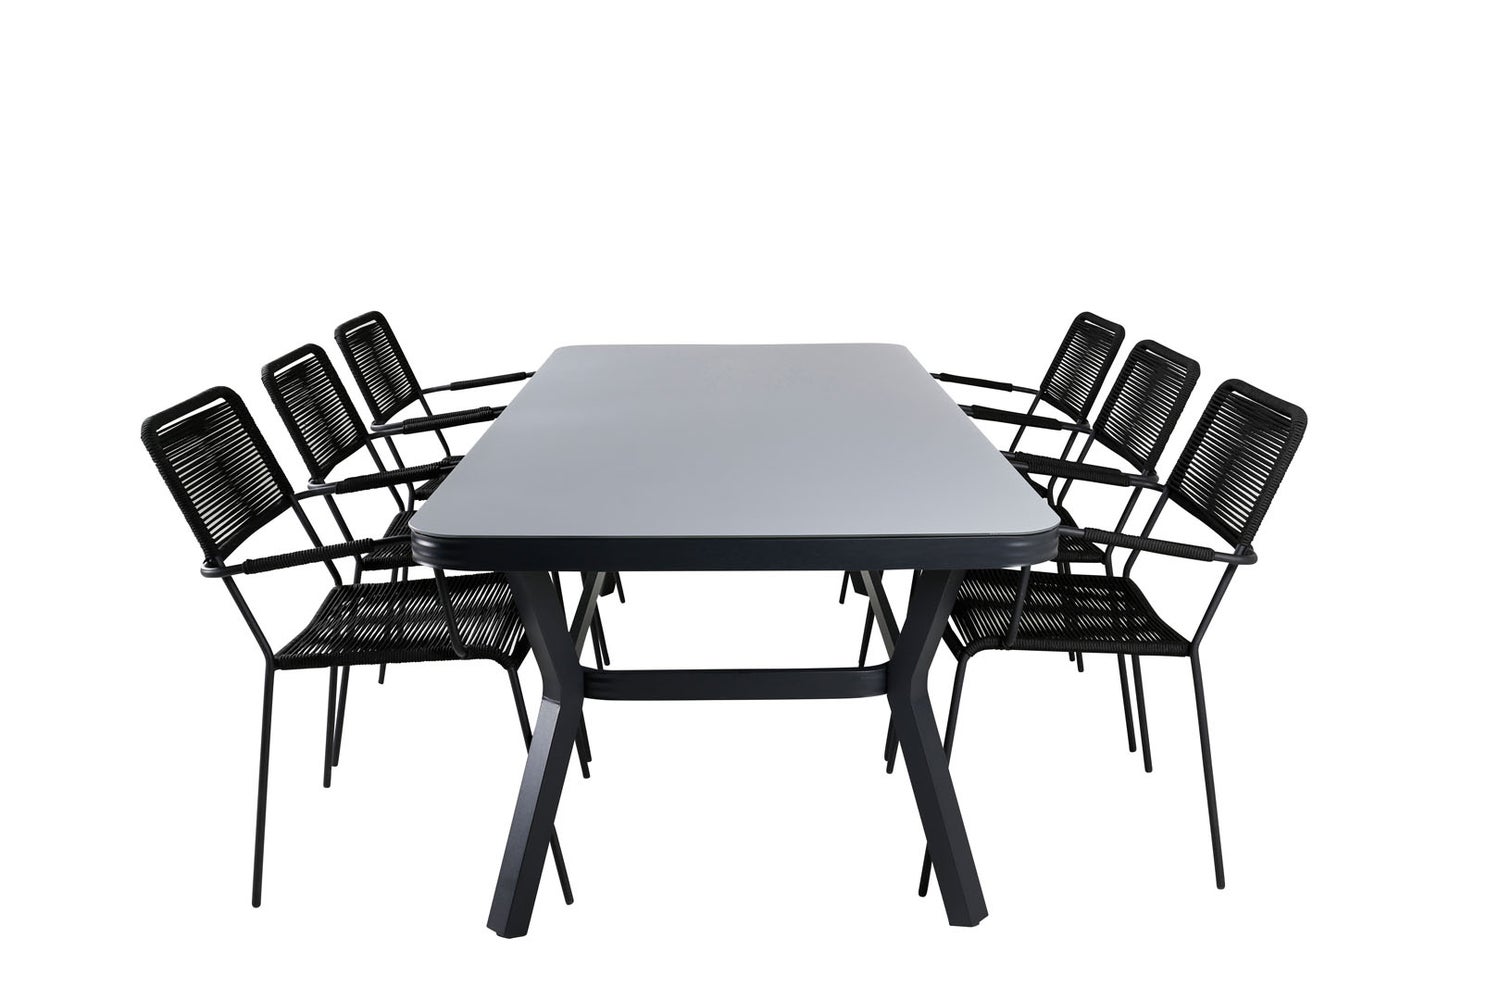 Virya Gartenset Tisch 100x200cm und 6 Stühle ArmlehneS Lindos schwarz, grau.